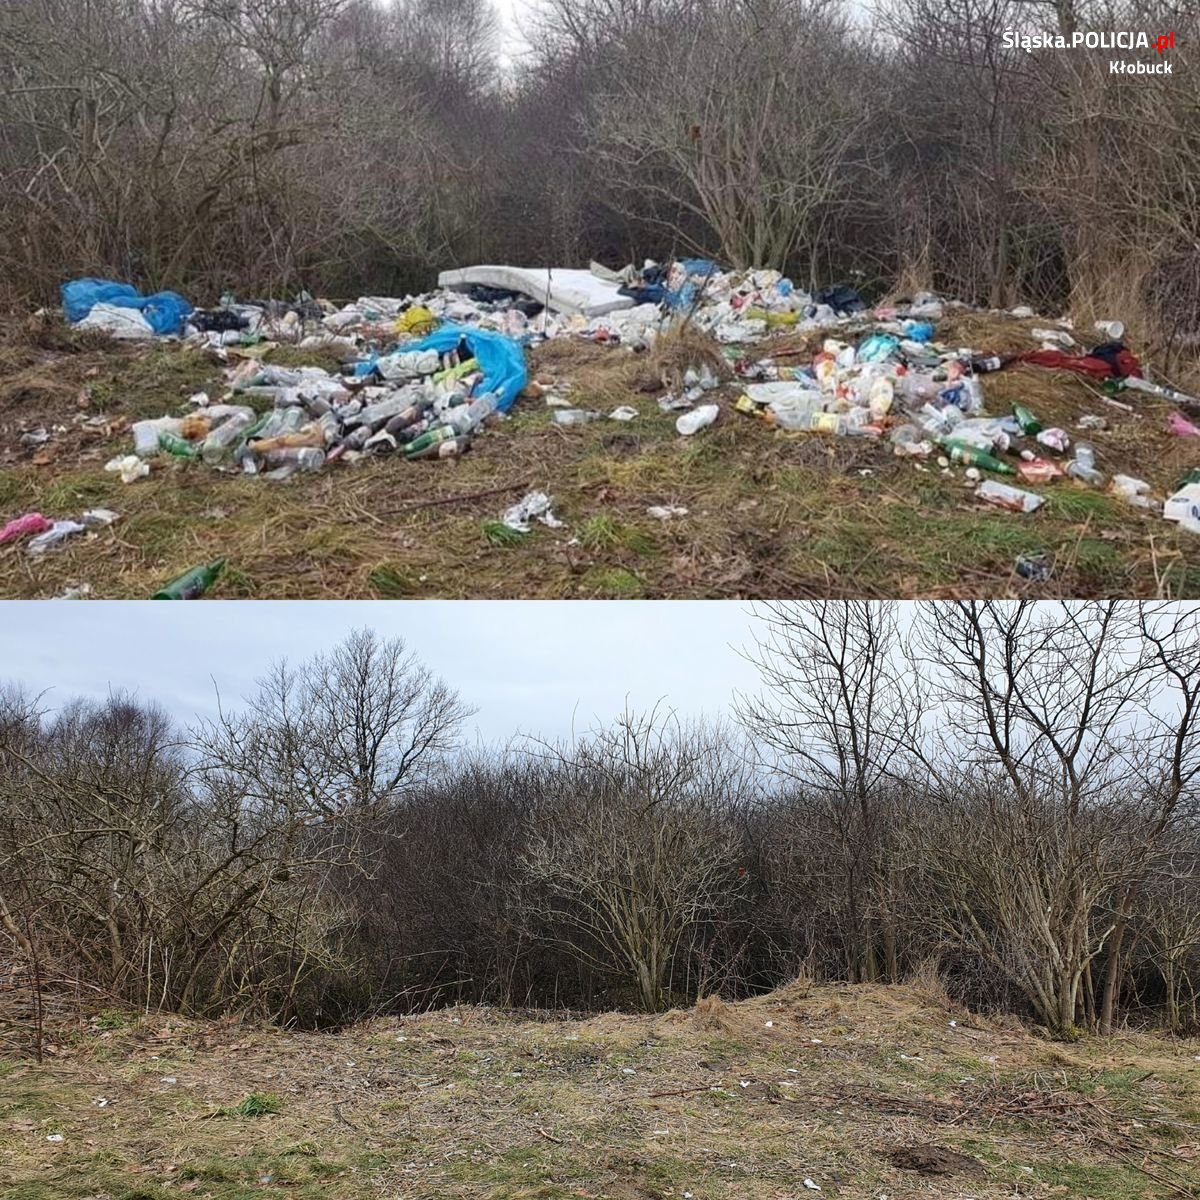 dwa zdjęcia połączone ze sobą, na górze widać śmieci porzucone na polu, na dole pole bez śmieci